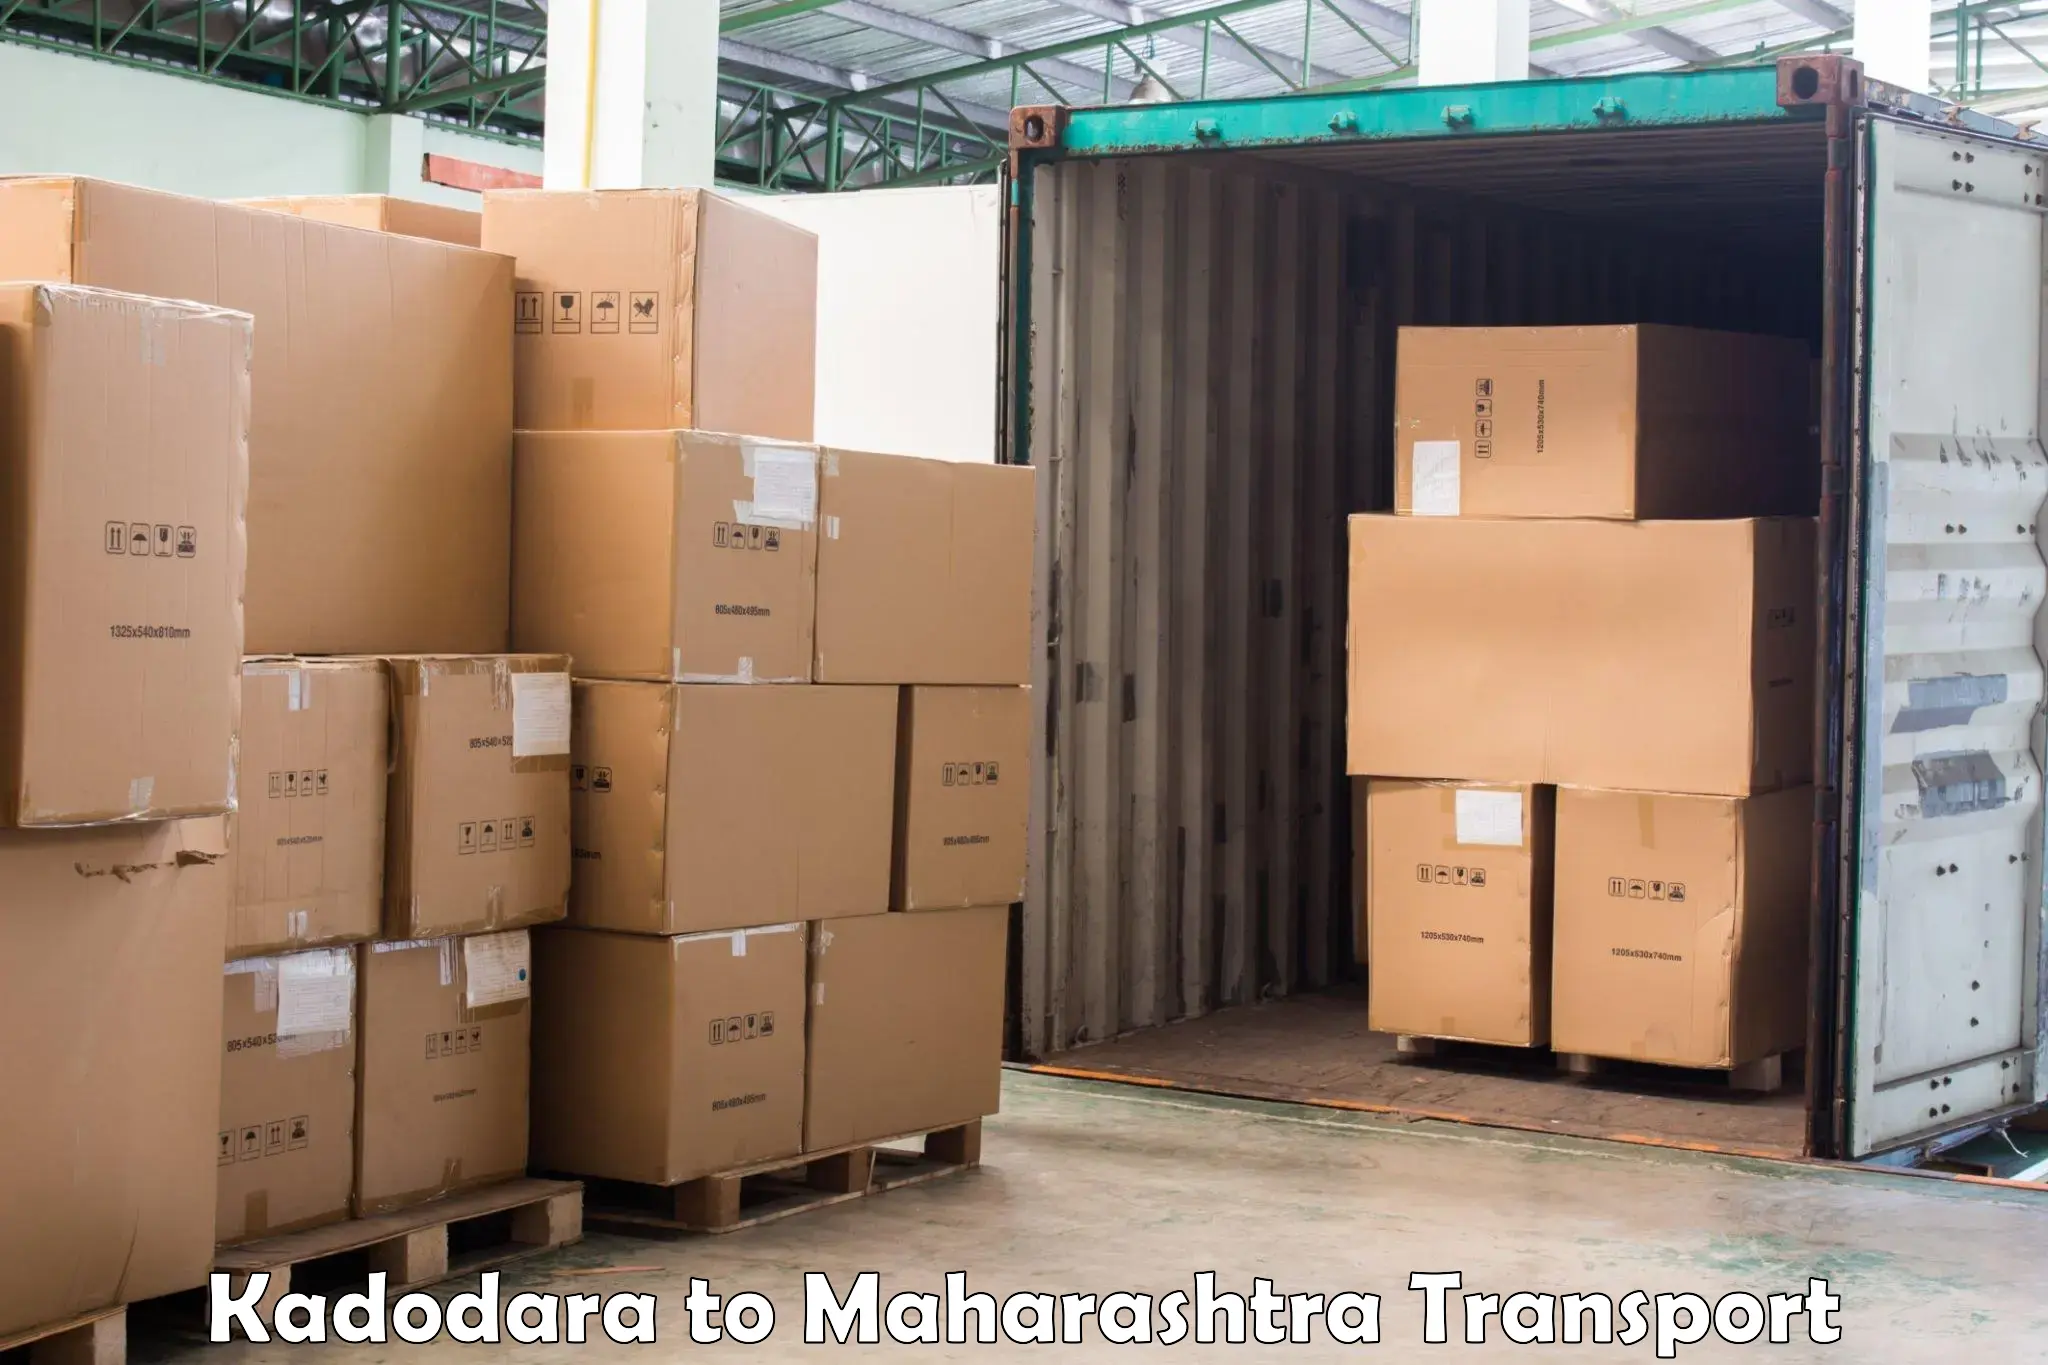 Daily parcel service transport in Kadodara to Sawantwadi